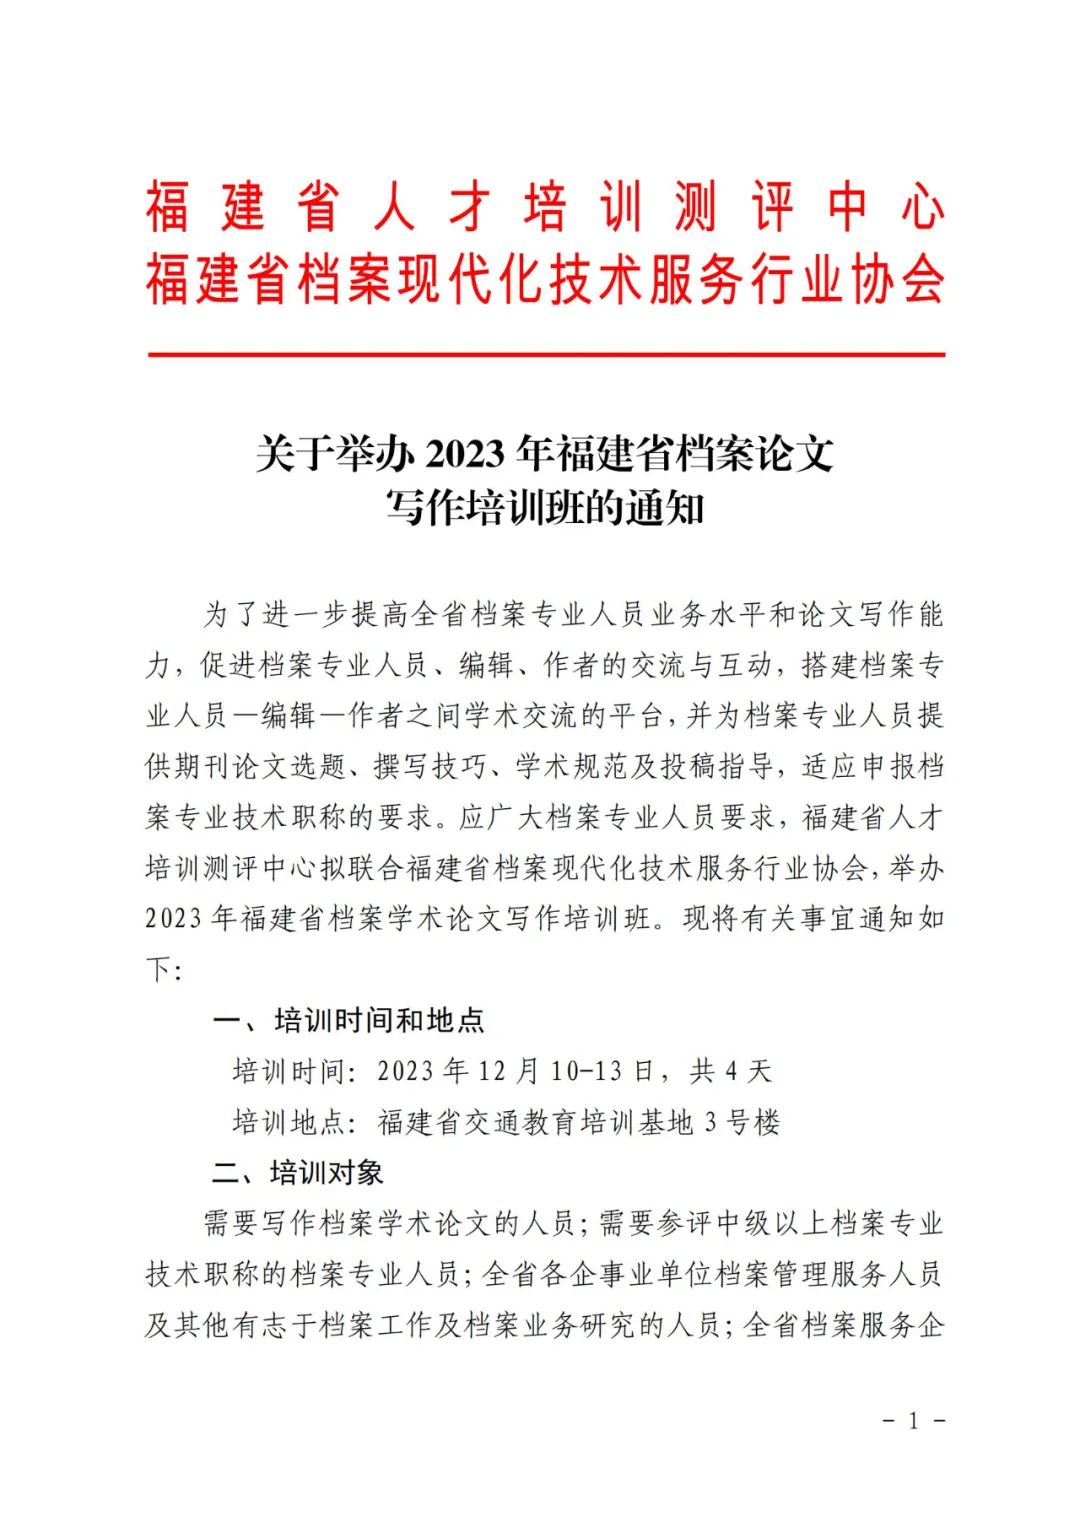 ● 关于举办2023年福建省档案论文写作培训班的通知